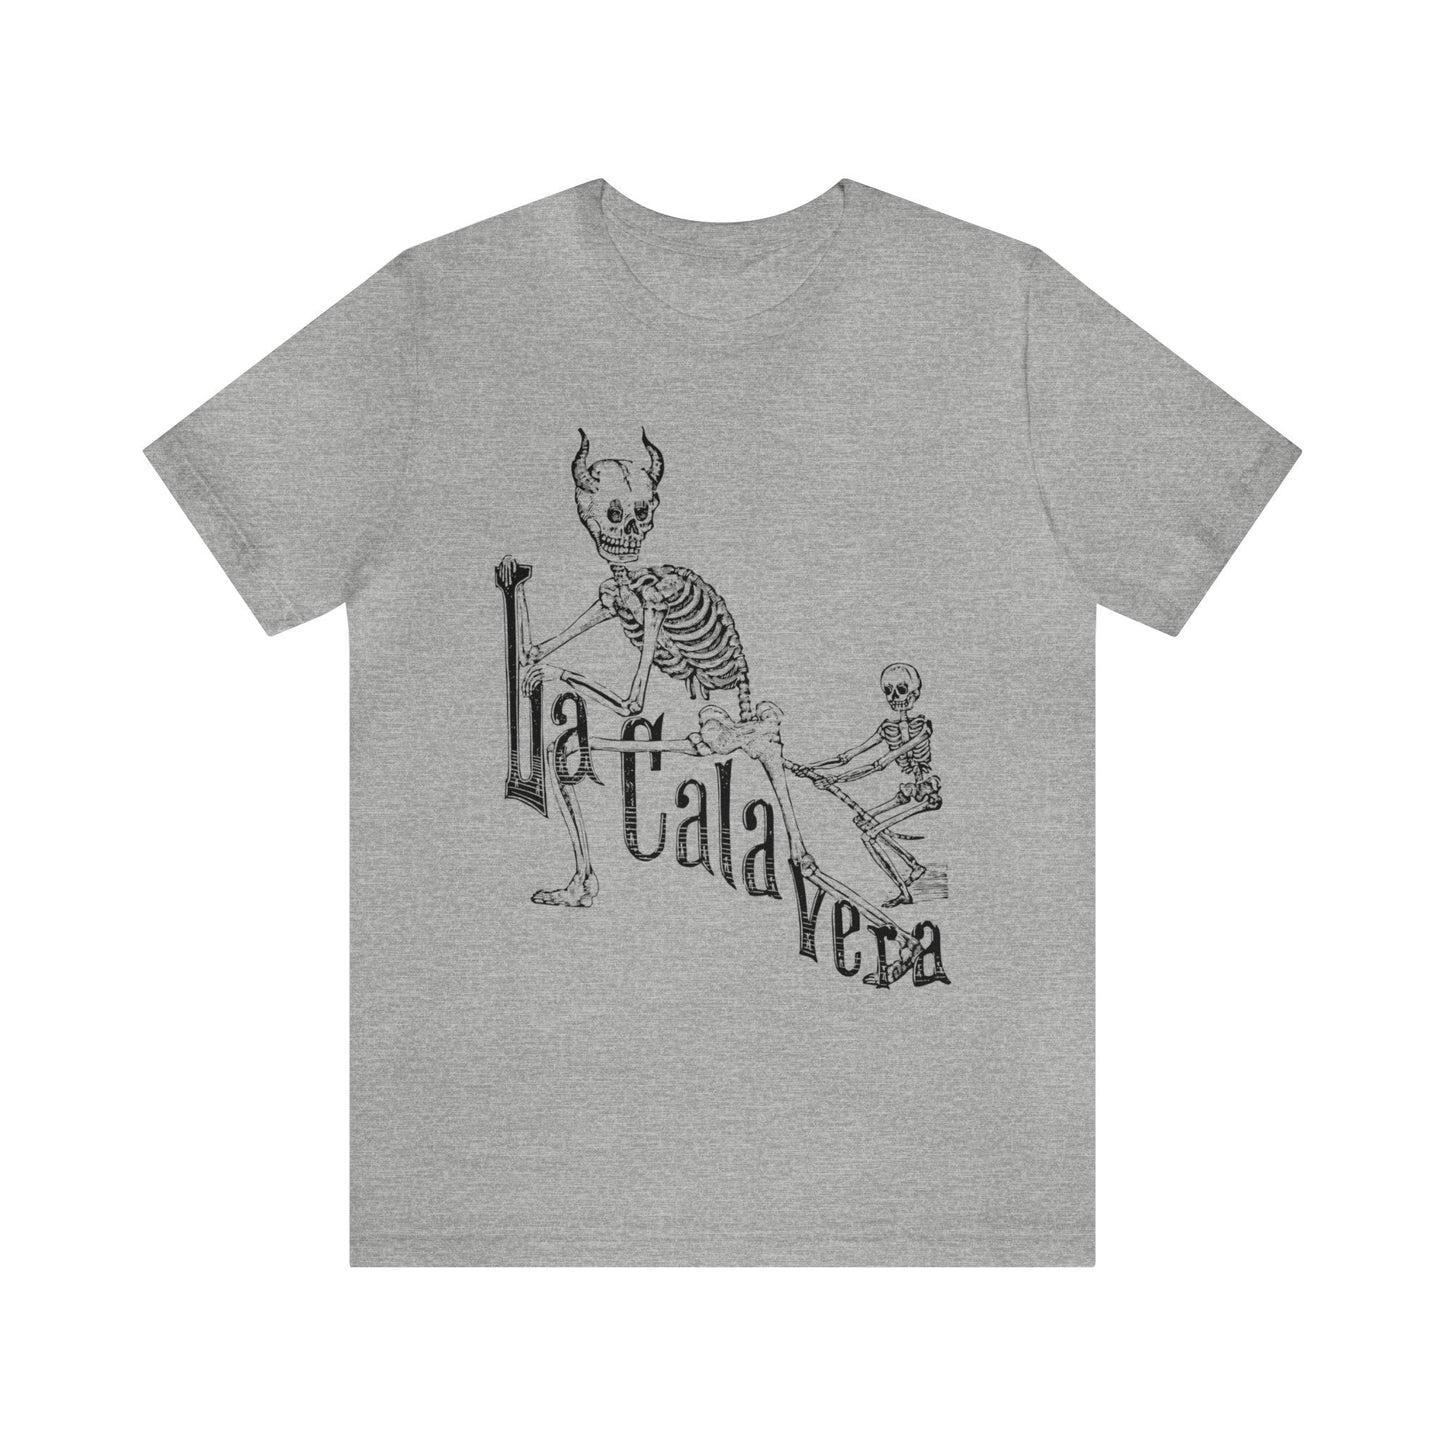 La Calavera - José Guadalupe Posada - Black Mass Apparel - T-Shirt